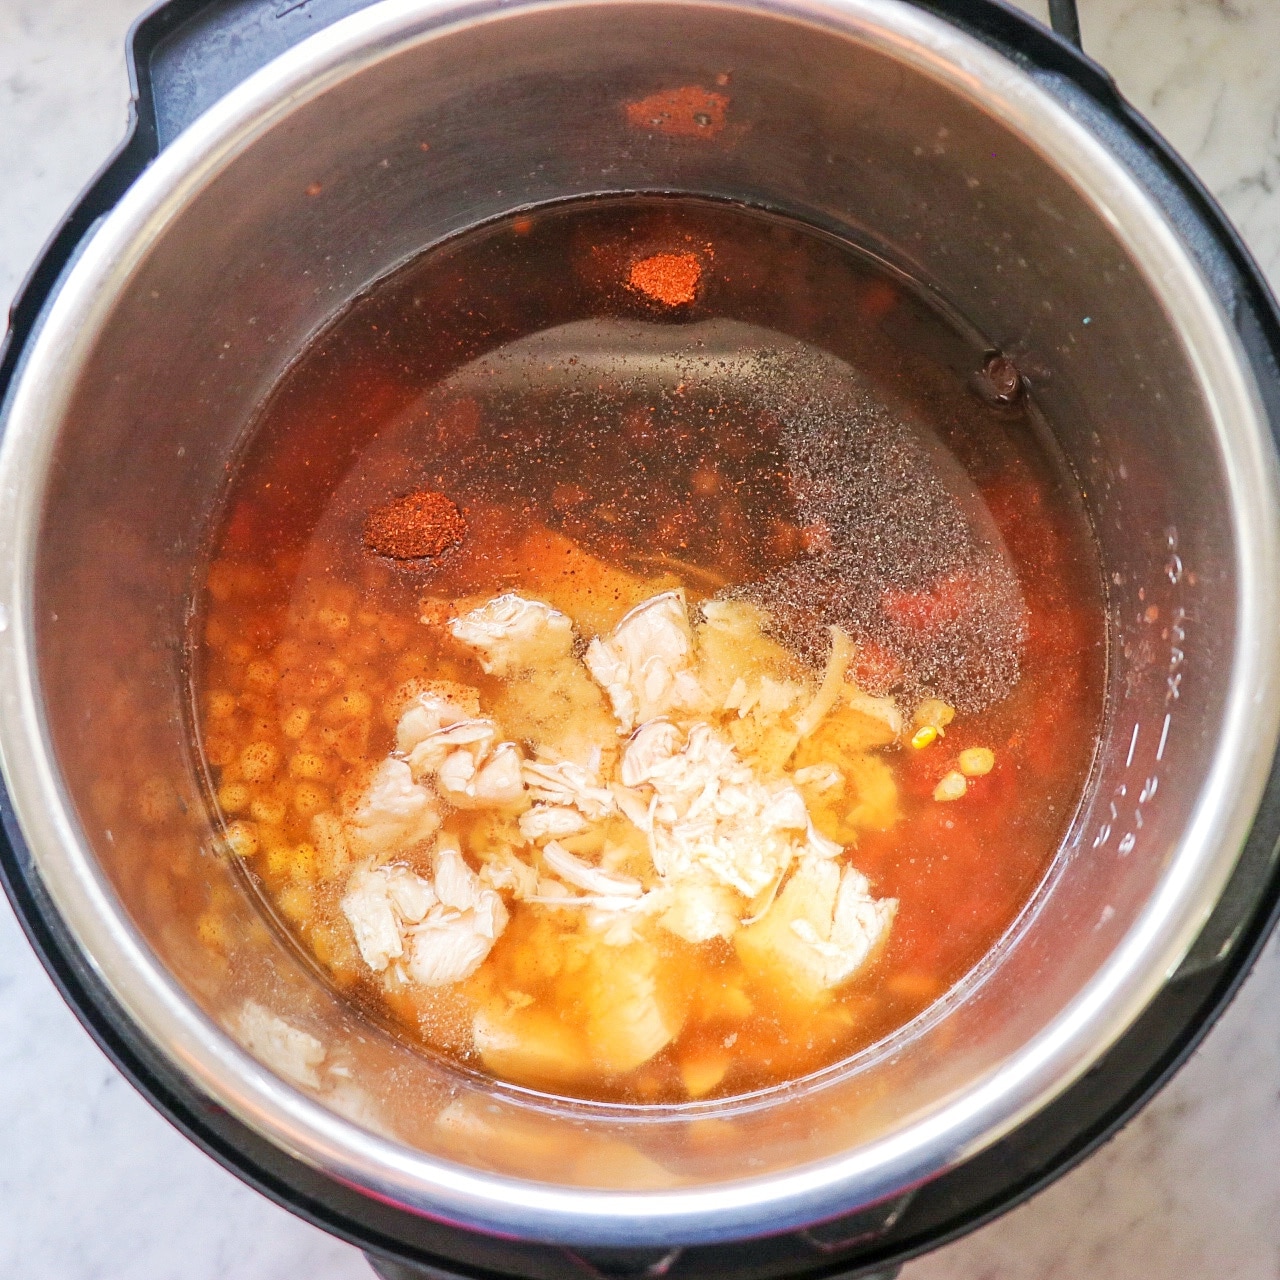 dump and go Instant Pot recipes: easy Instant Pot chicken tortilla soup